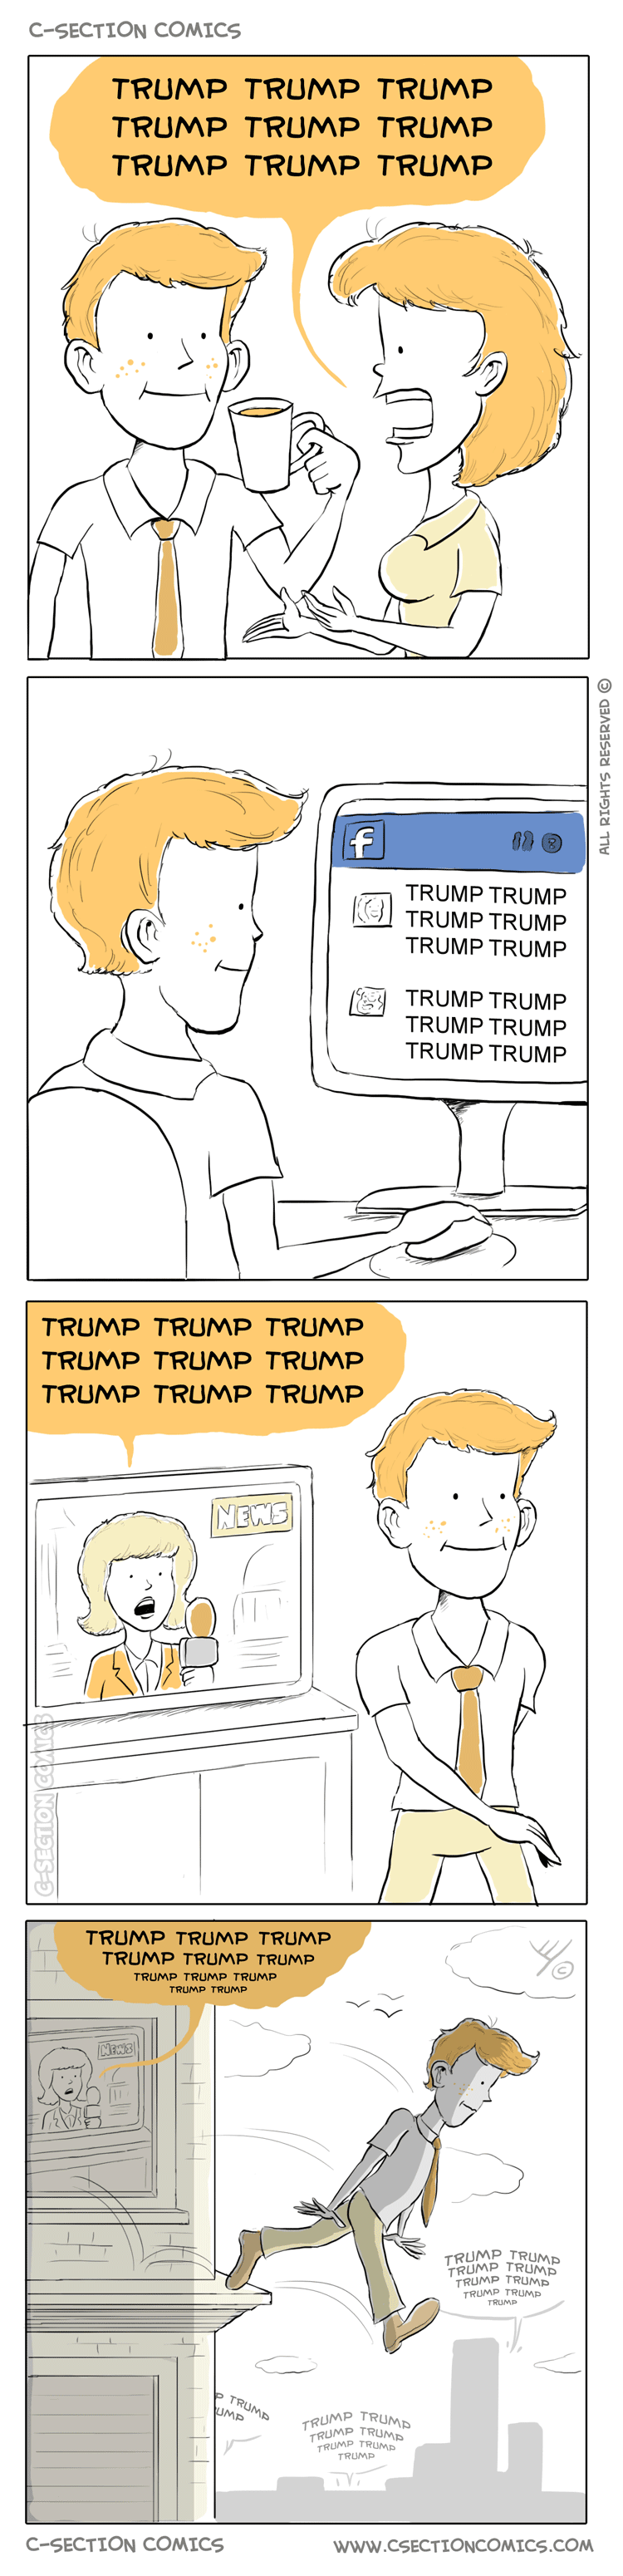 Trump Trump Trump - by C-Section Comics